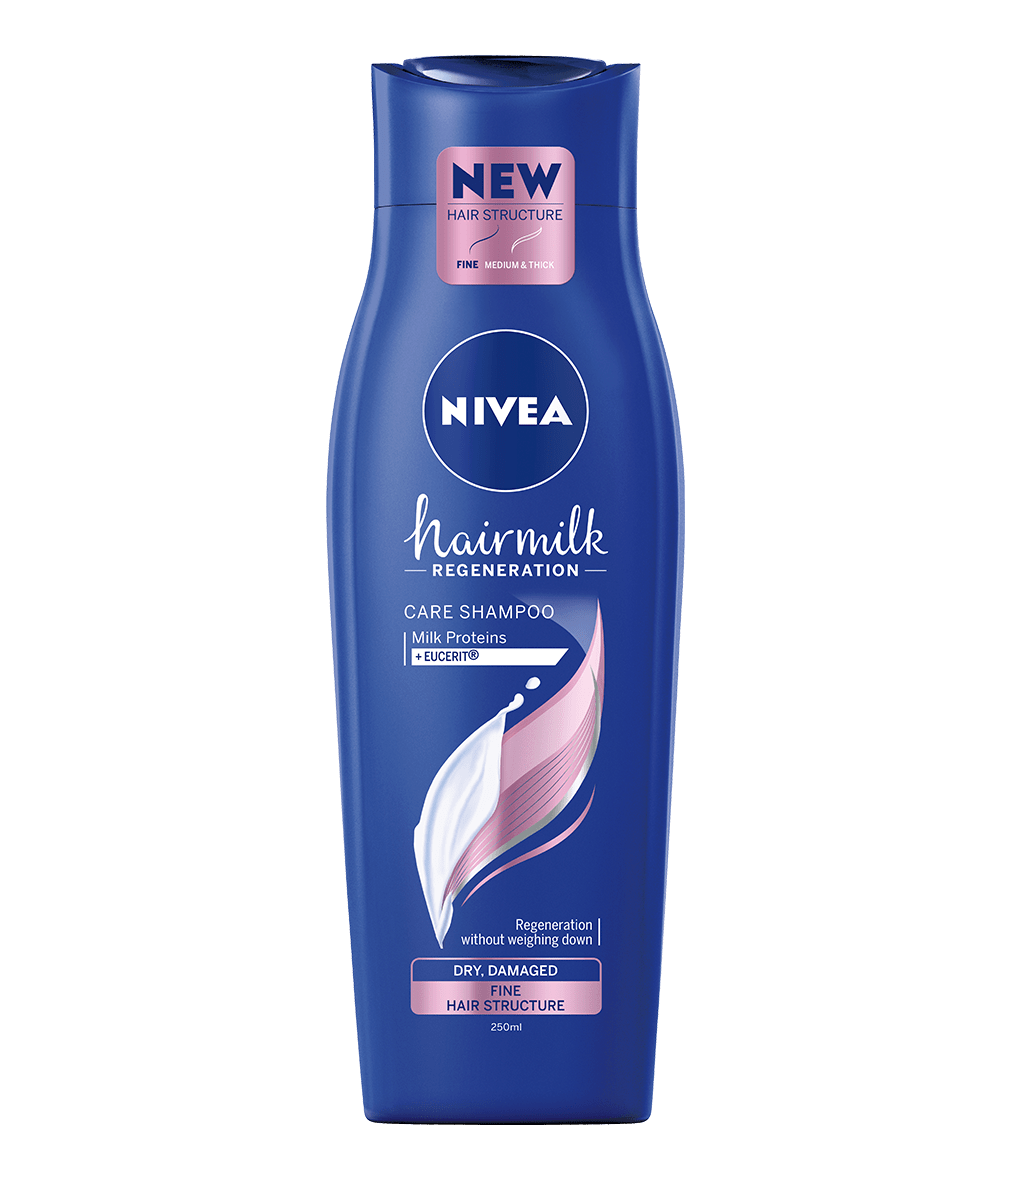 hairmilk szampon nivea